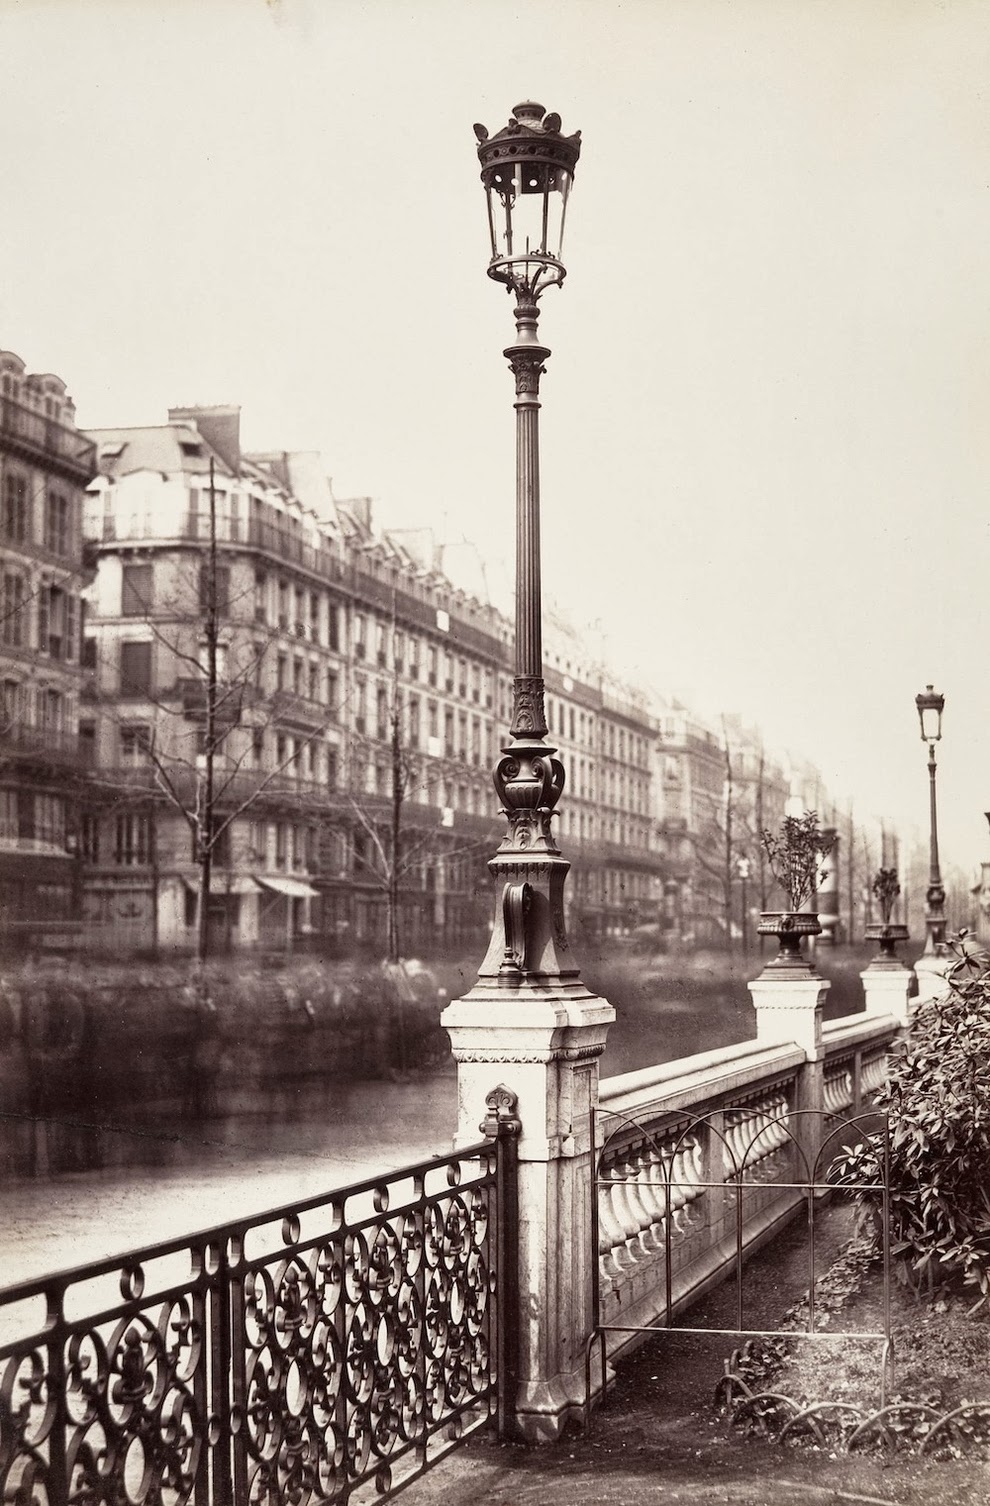 Near Arts et Métiers in 1864 | City of Paris, France | Rare & Old Vintage Photos (1860)